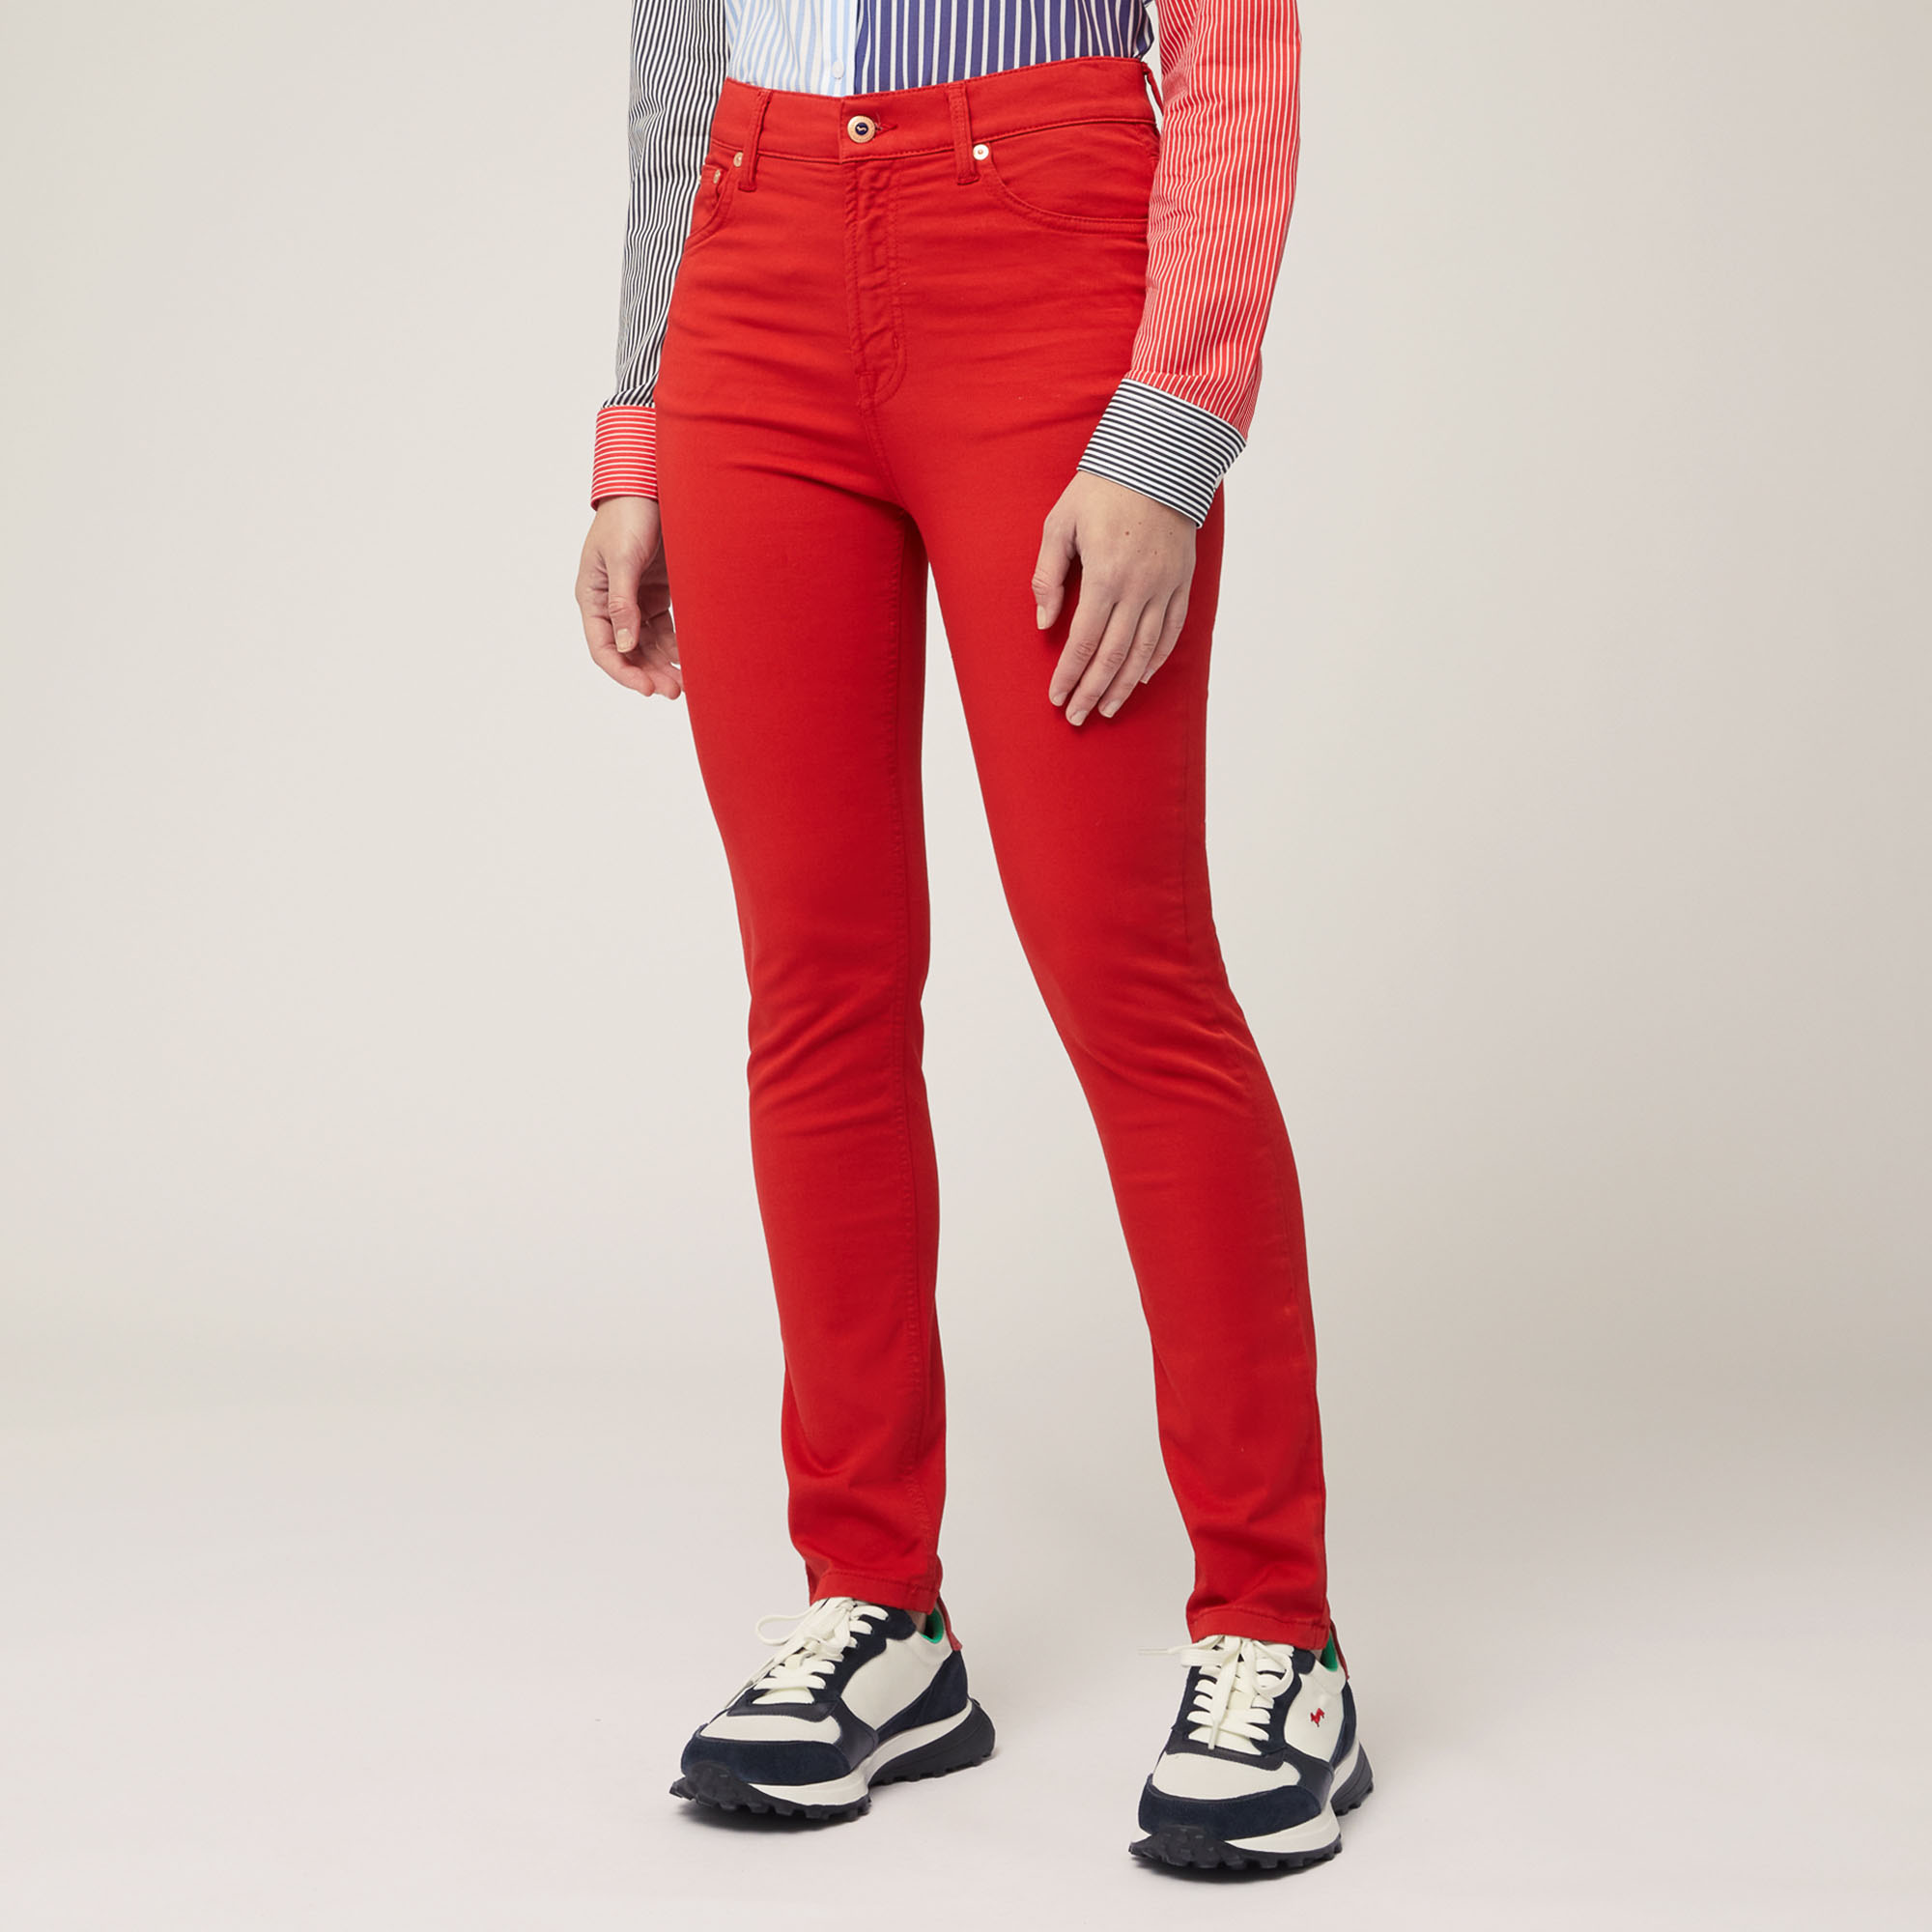 Women's Pants & Trousers - Macy's